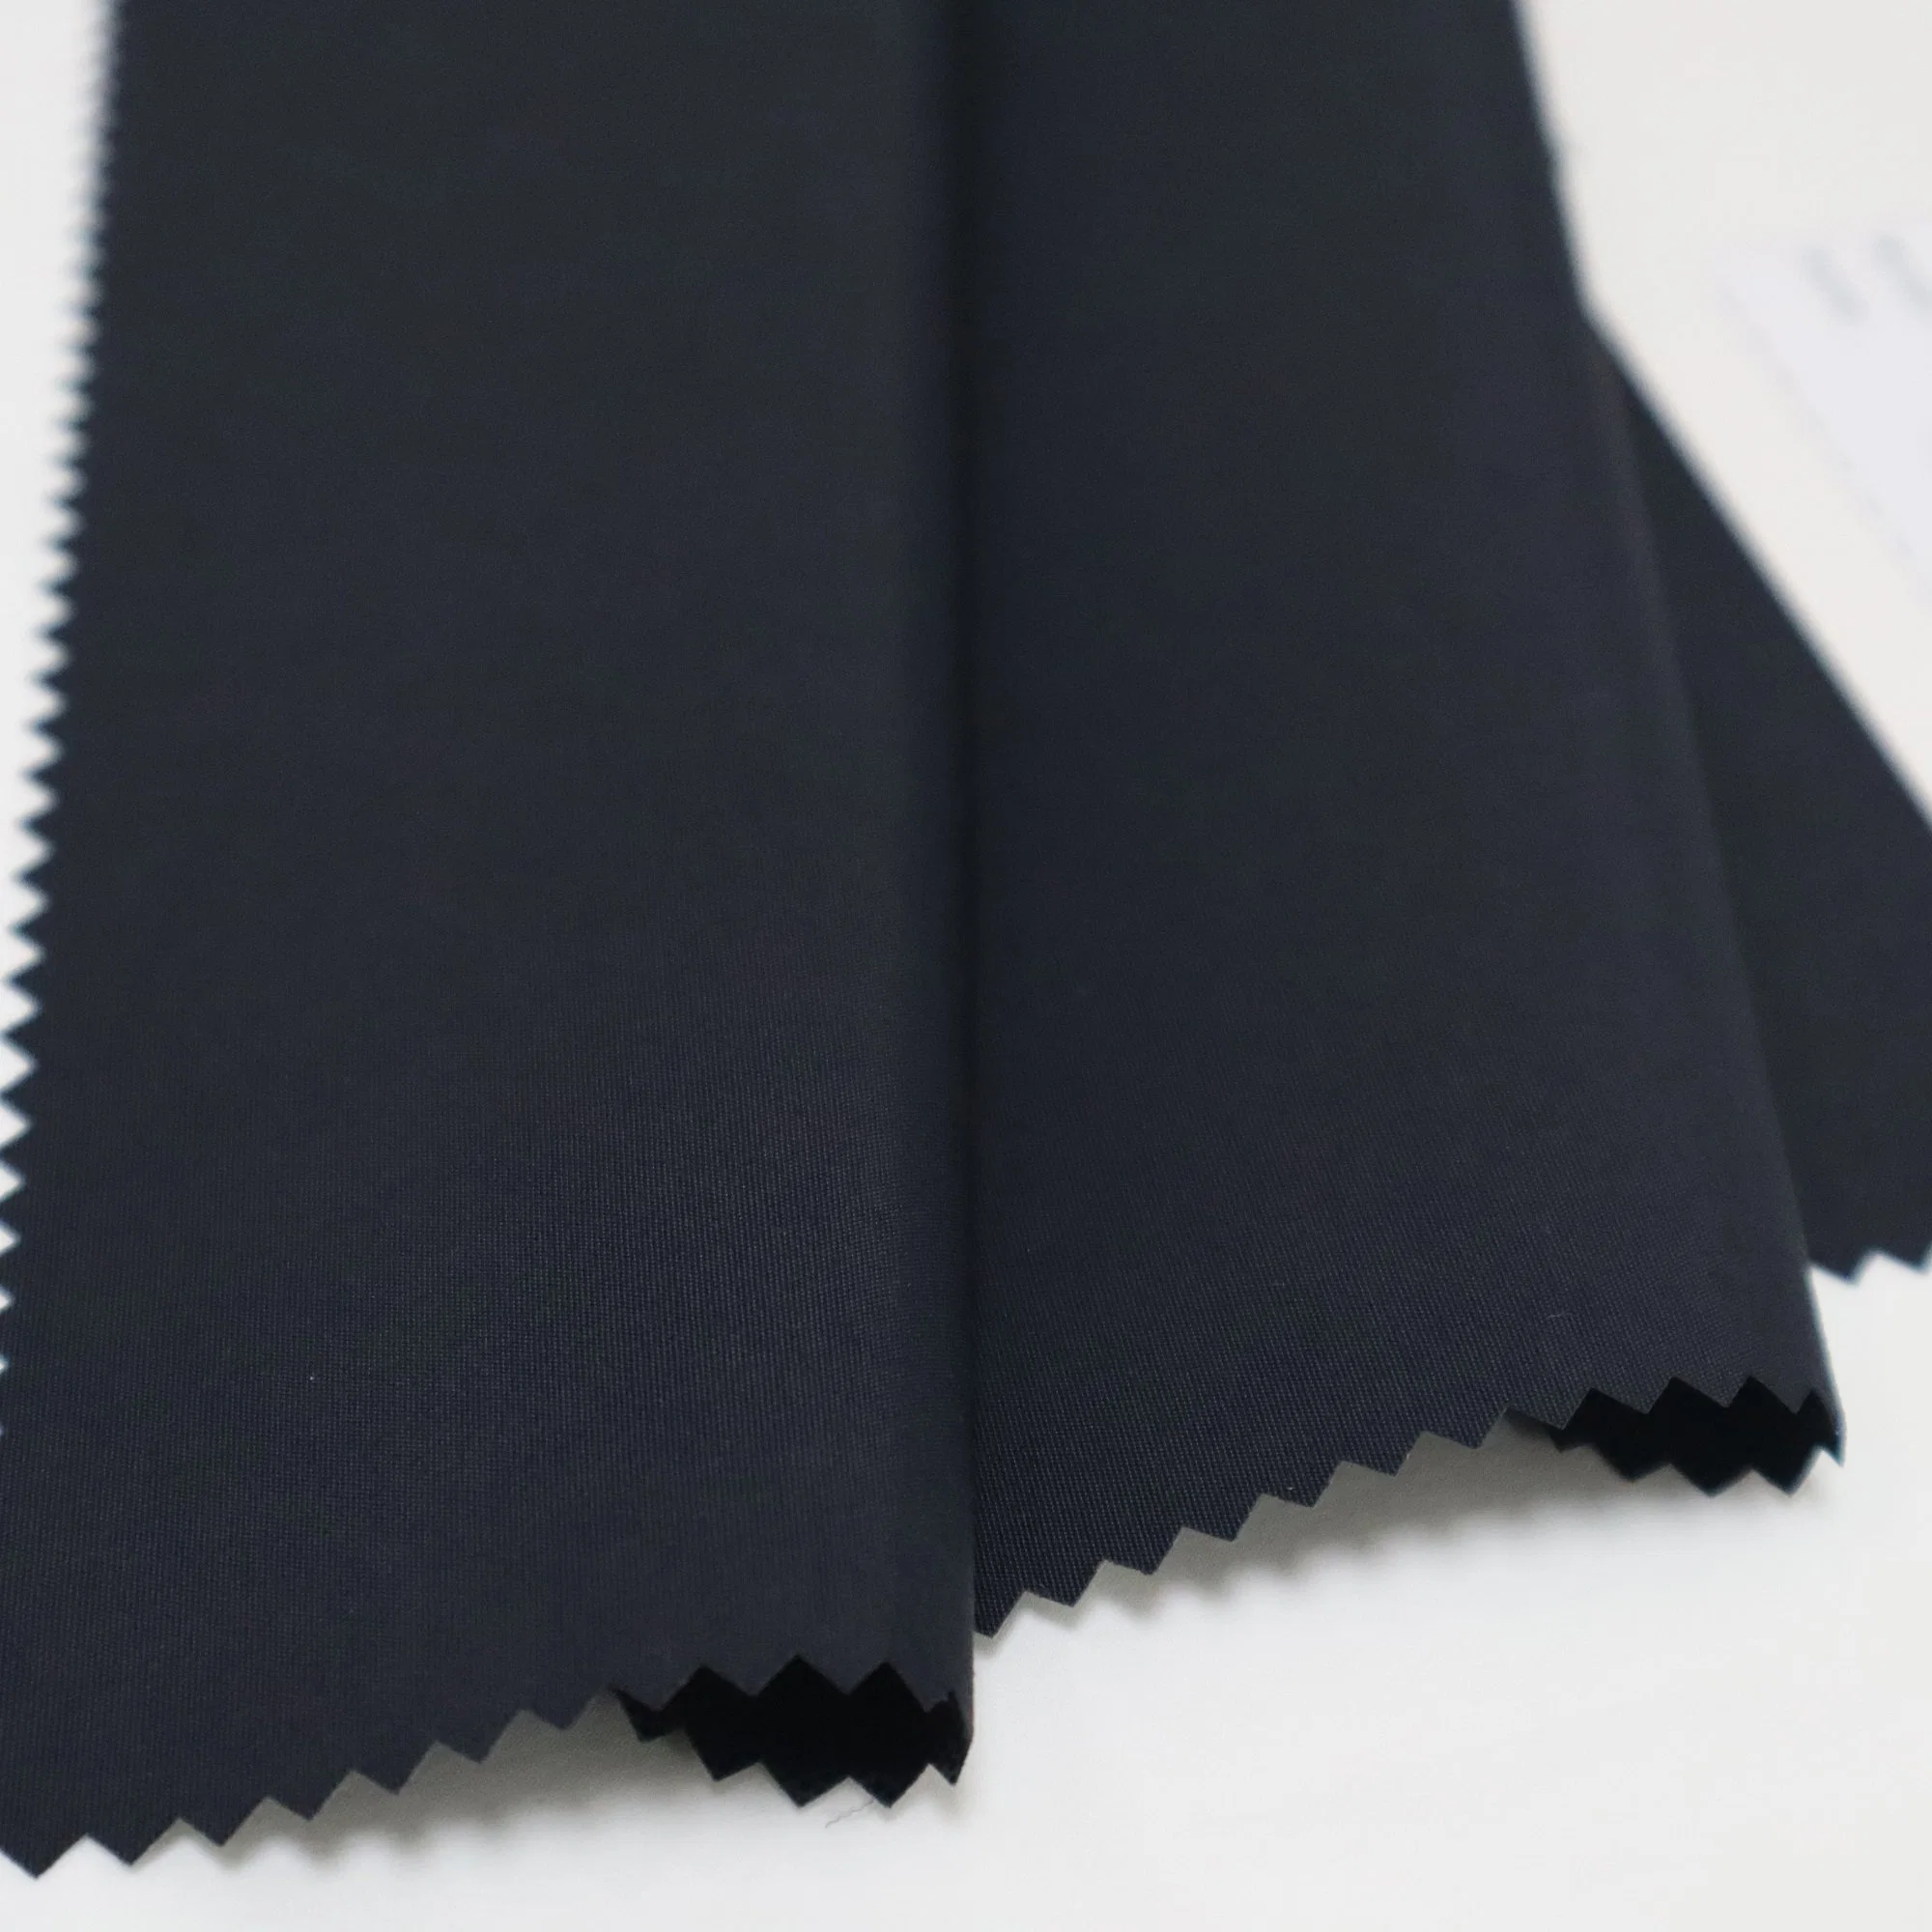 Nylon 100% reciclado Fd Taslan TPU Tejido laminado resistente al agua clara para el invierno de Prendas de Vestir chaqueta